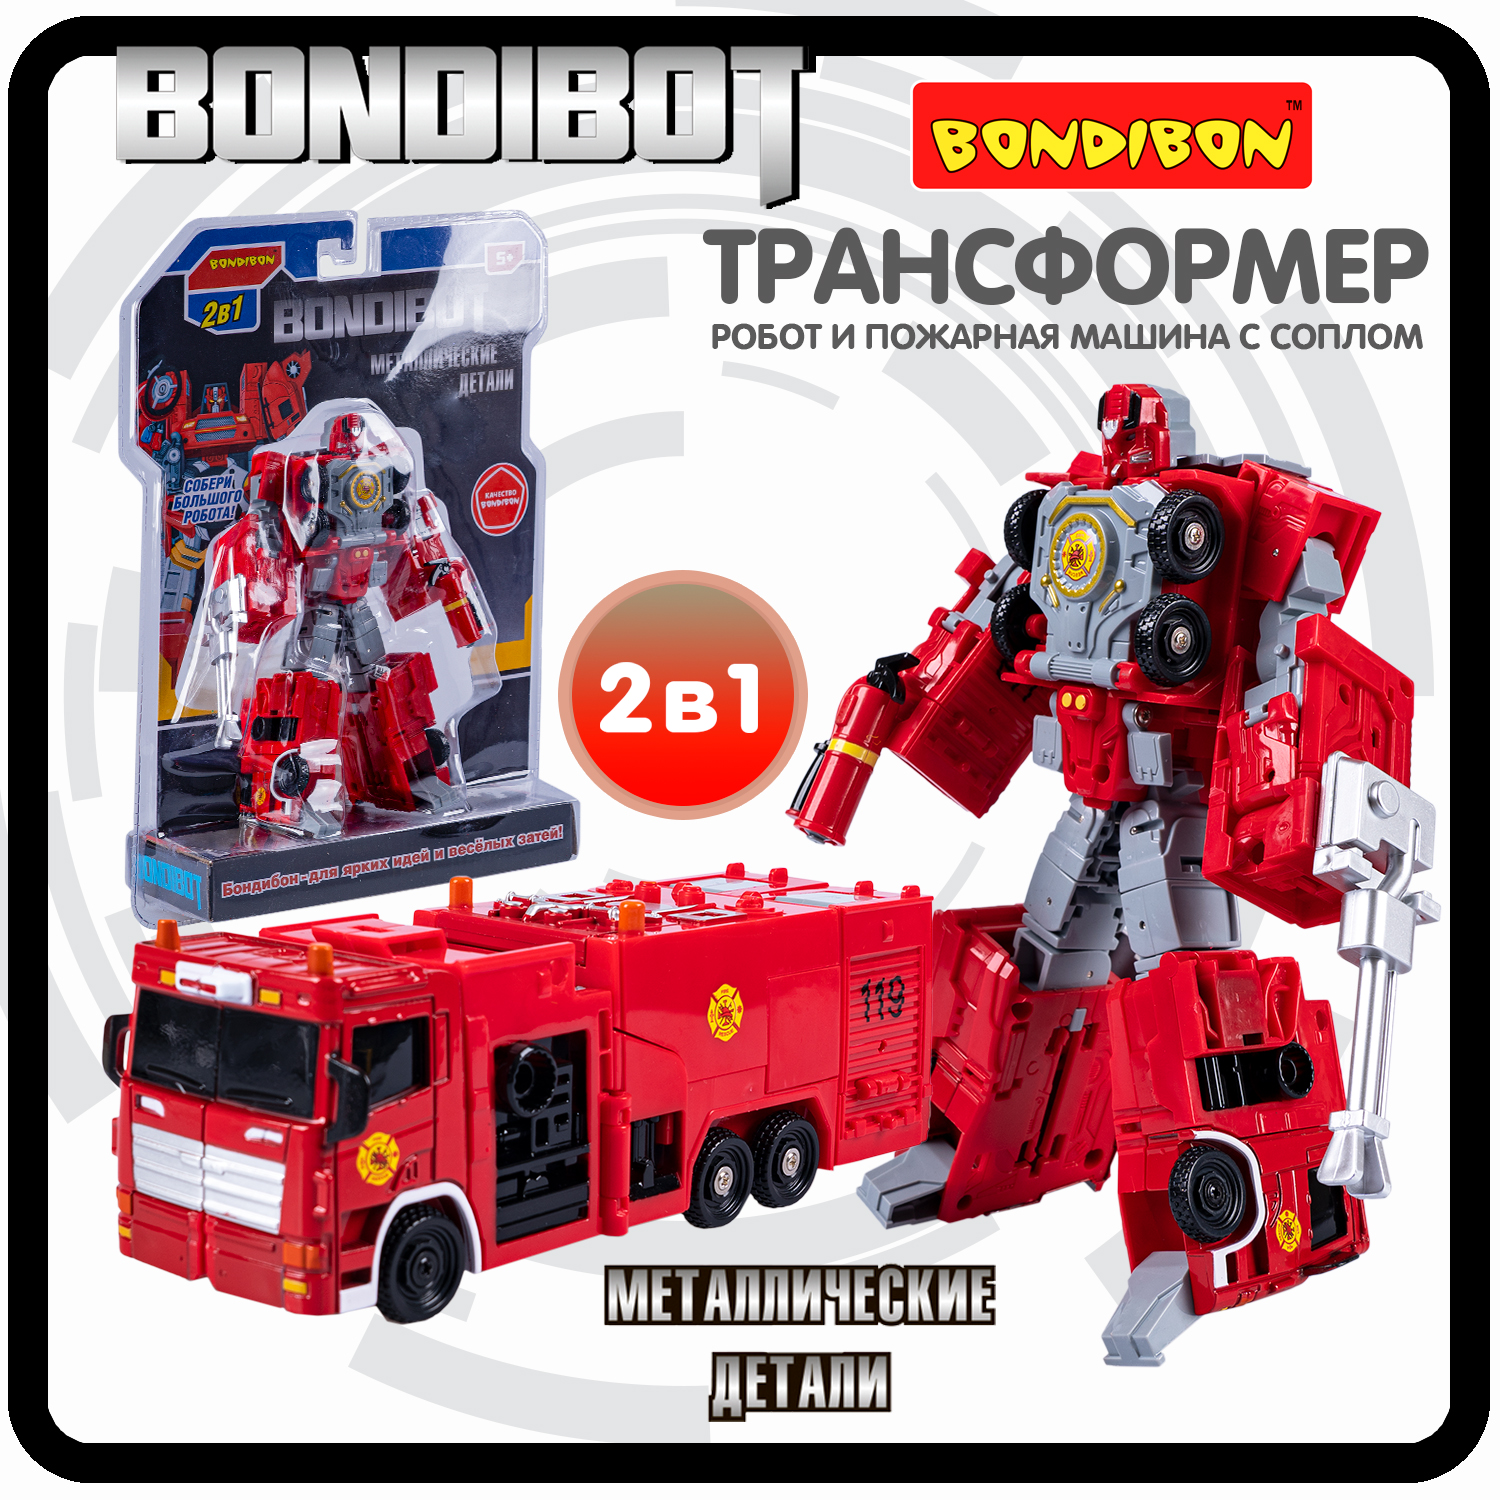 Робот трансформер 2в1 Bondibon BONDIBOT пожарная машина с соплом bondibon трансформер конструктор с отвёрткой bondibot 2 в 1 робот пожарная машина с водомётом